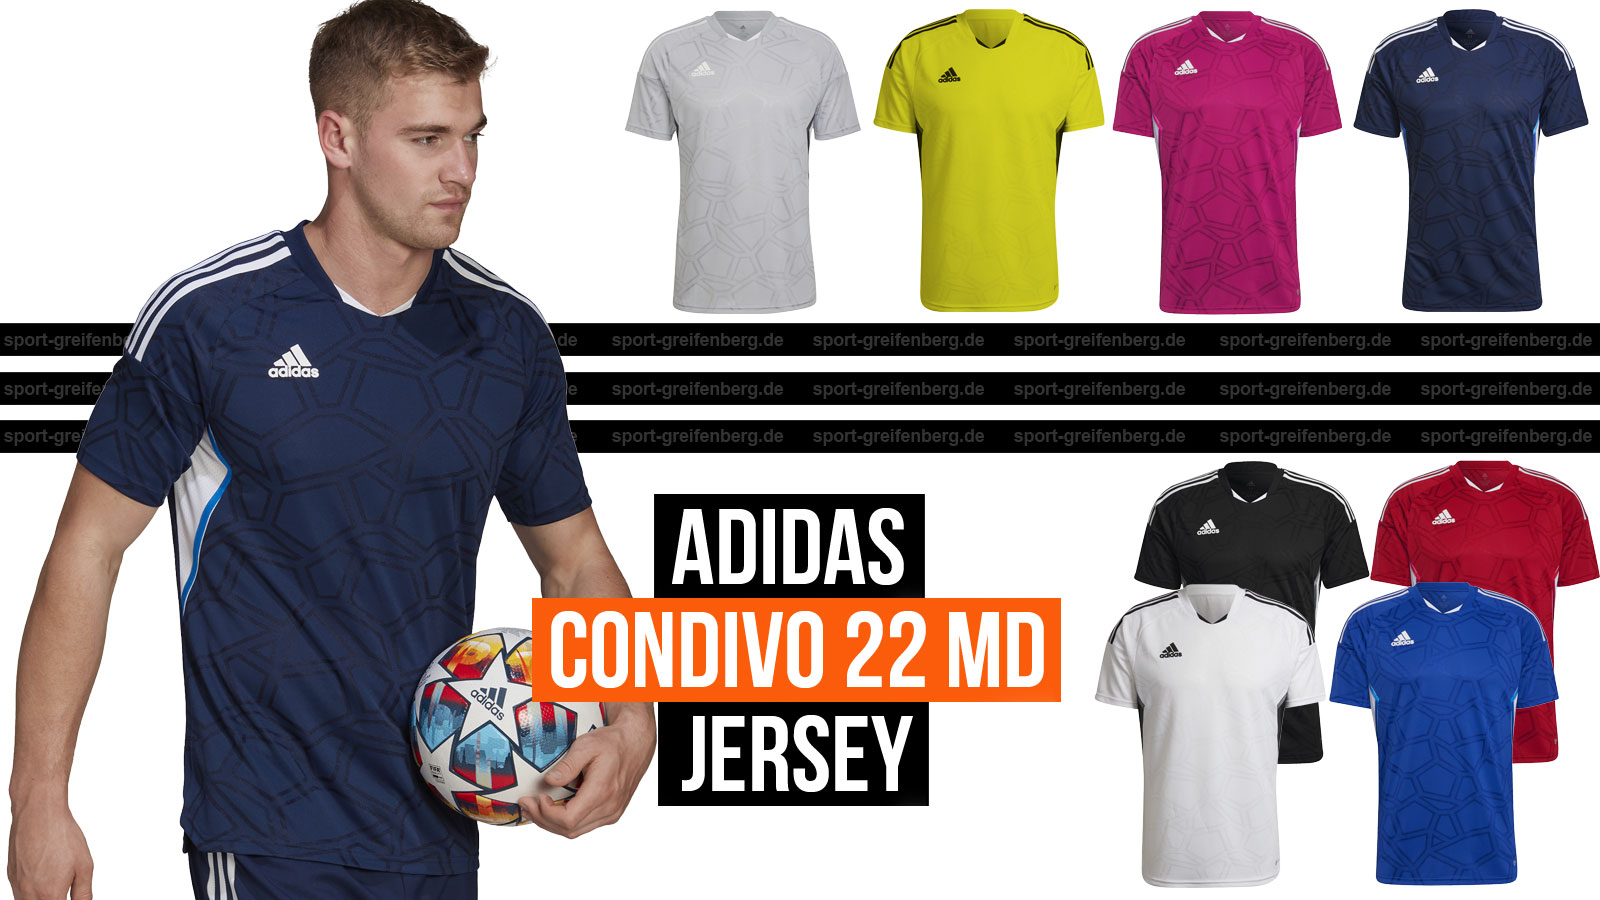 Das adidas Condivo 22 MD Jersey für den Trikotsatz der Saison 2022/2023